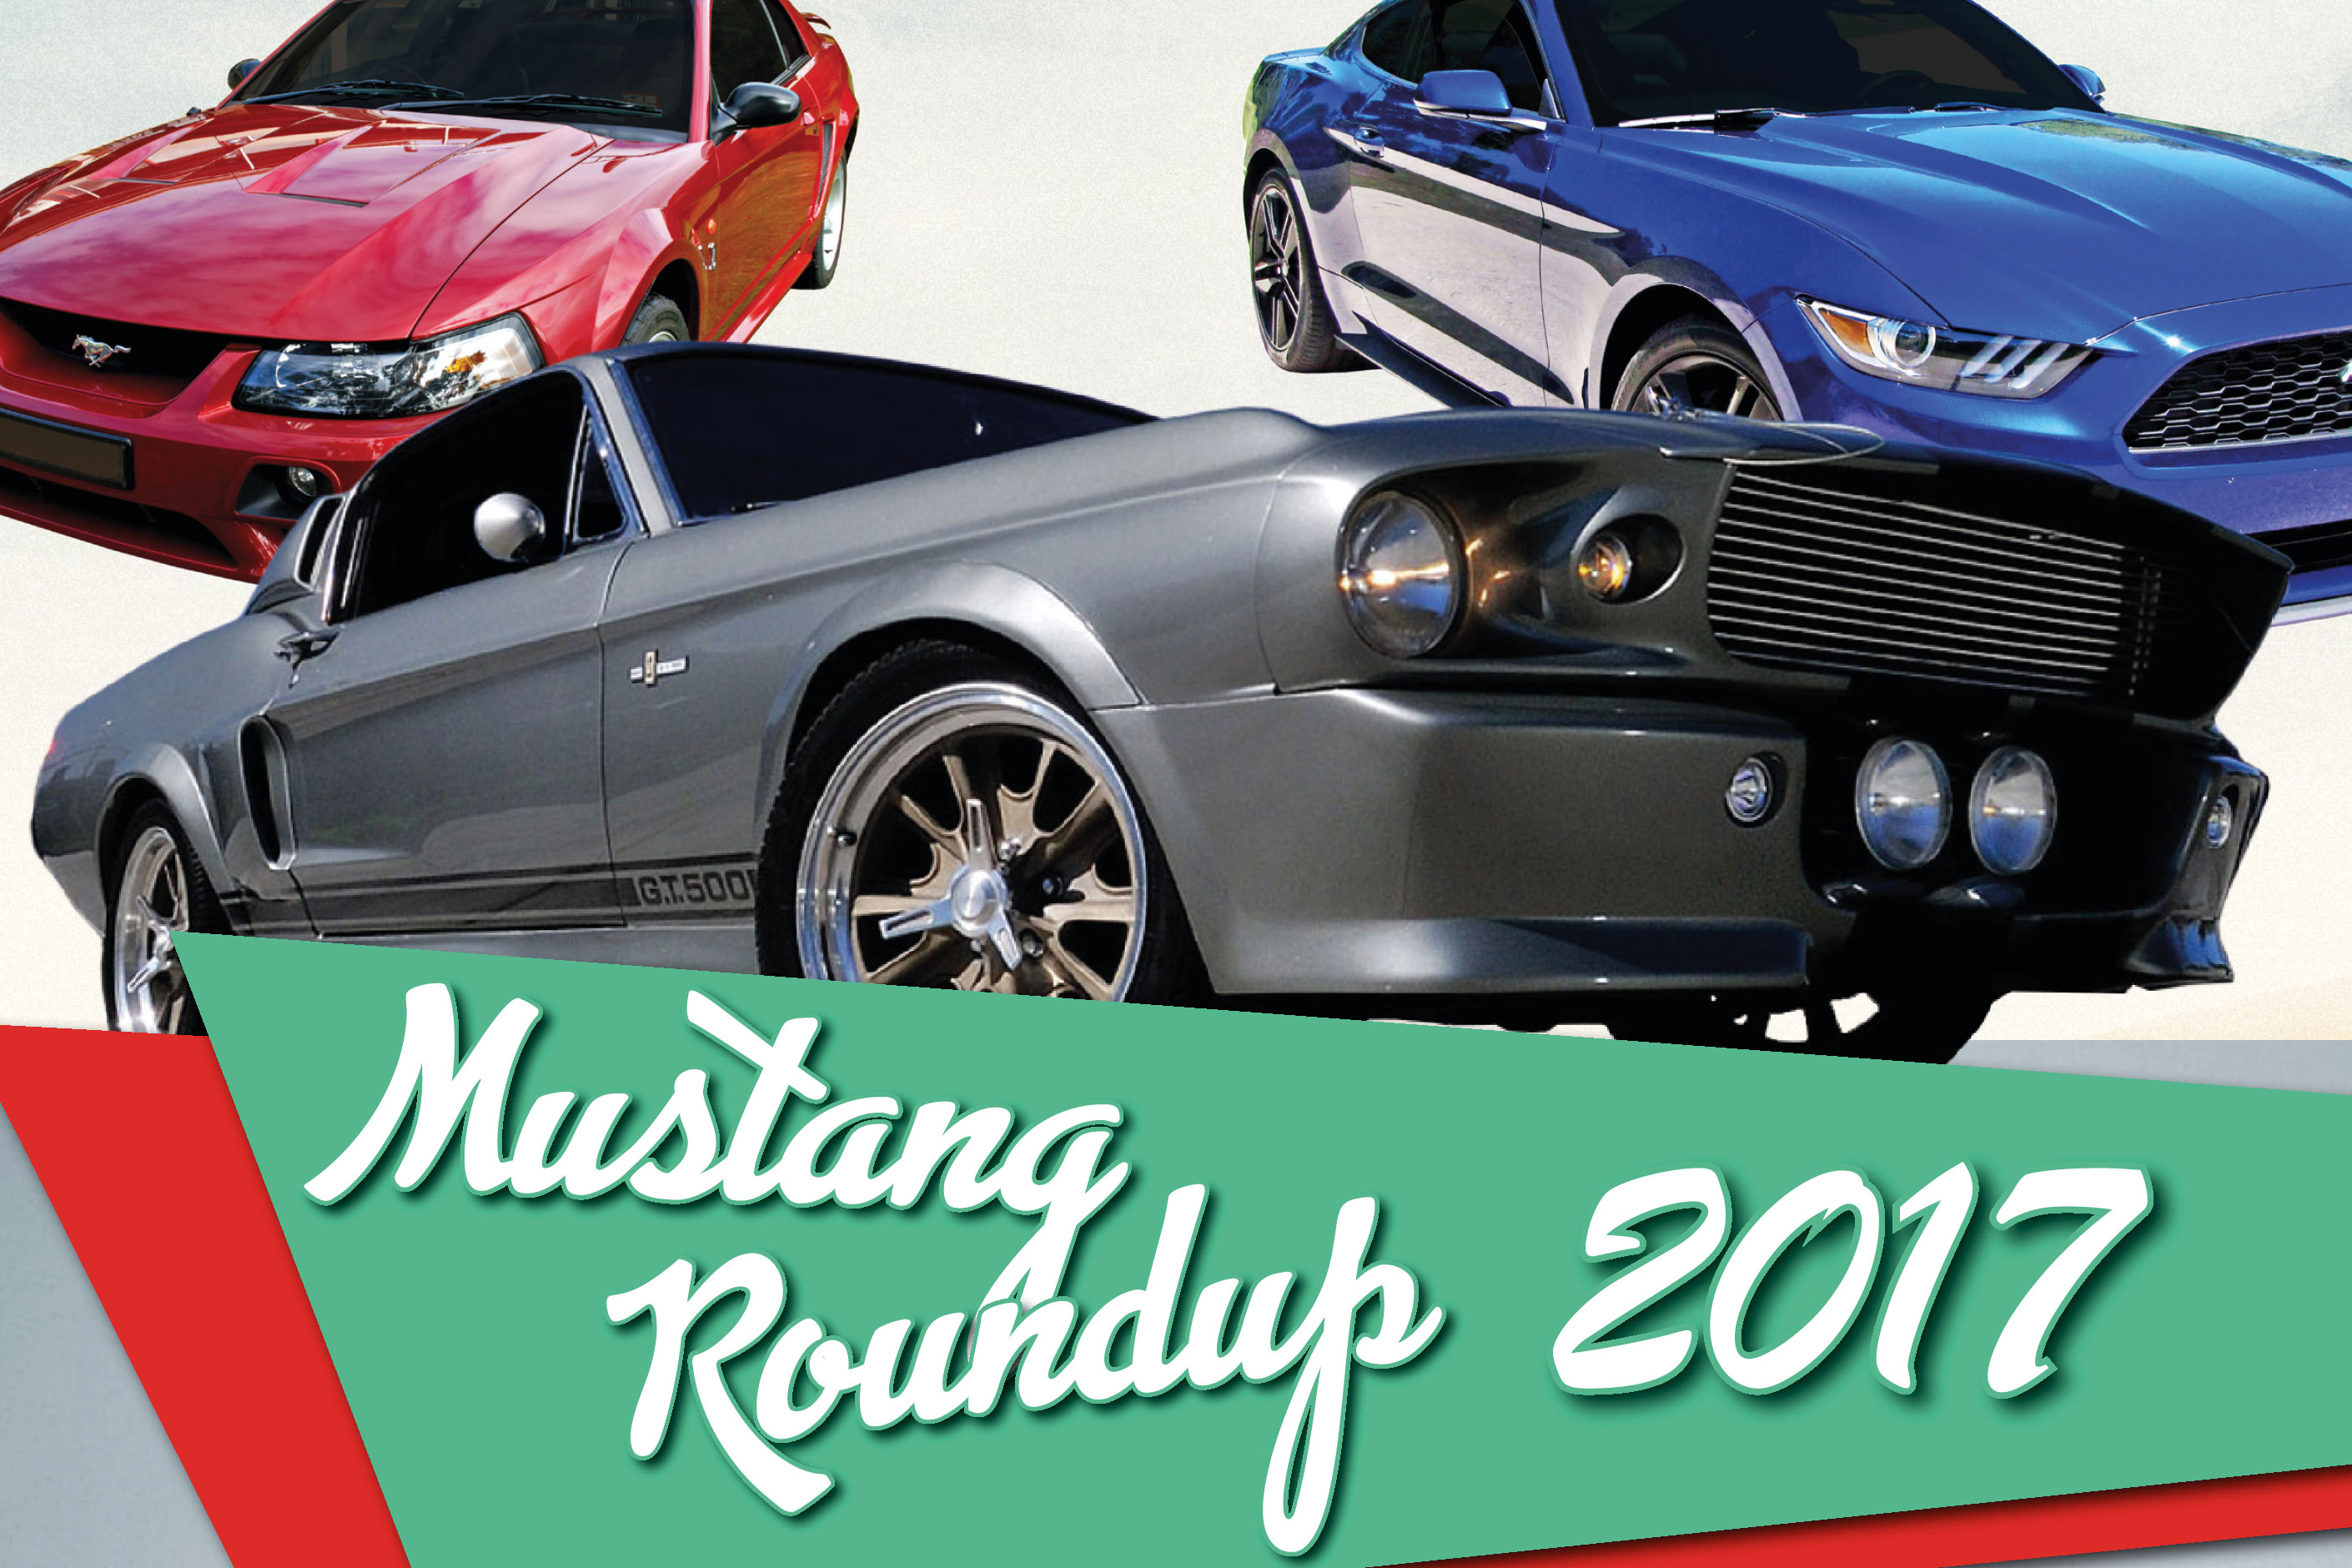 Mustang Roundup 2017